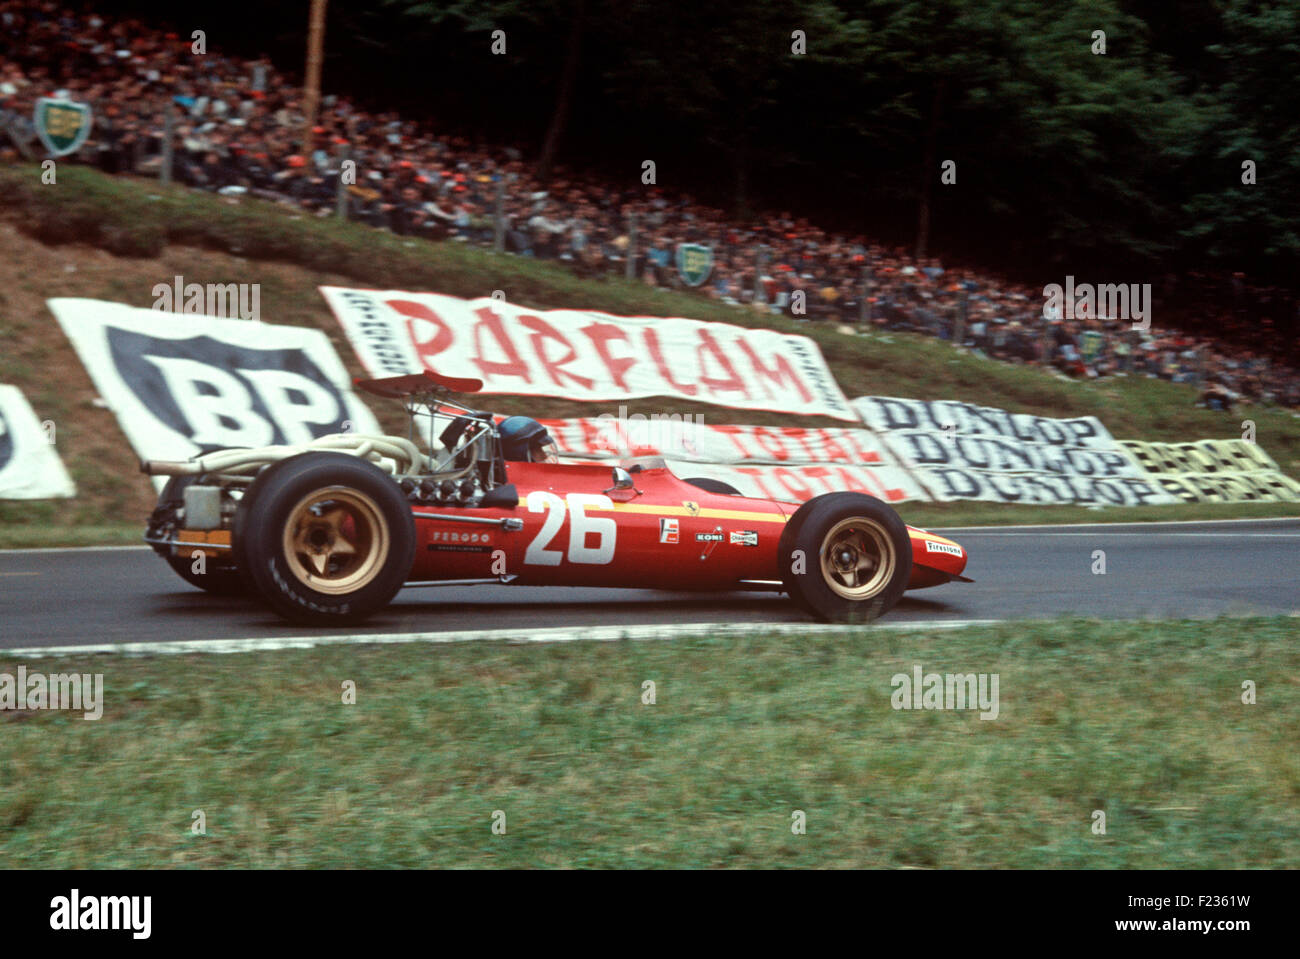 26 Jackie Ickx nella sua Ferrari 312 V12 entrando Nouveau Monde tornante a Rouen, l'eventuale vincitore del GP di Francia 7 Luglio 1968 Foto Stock